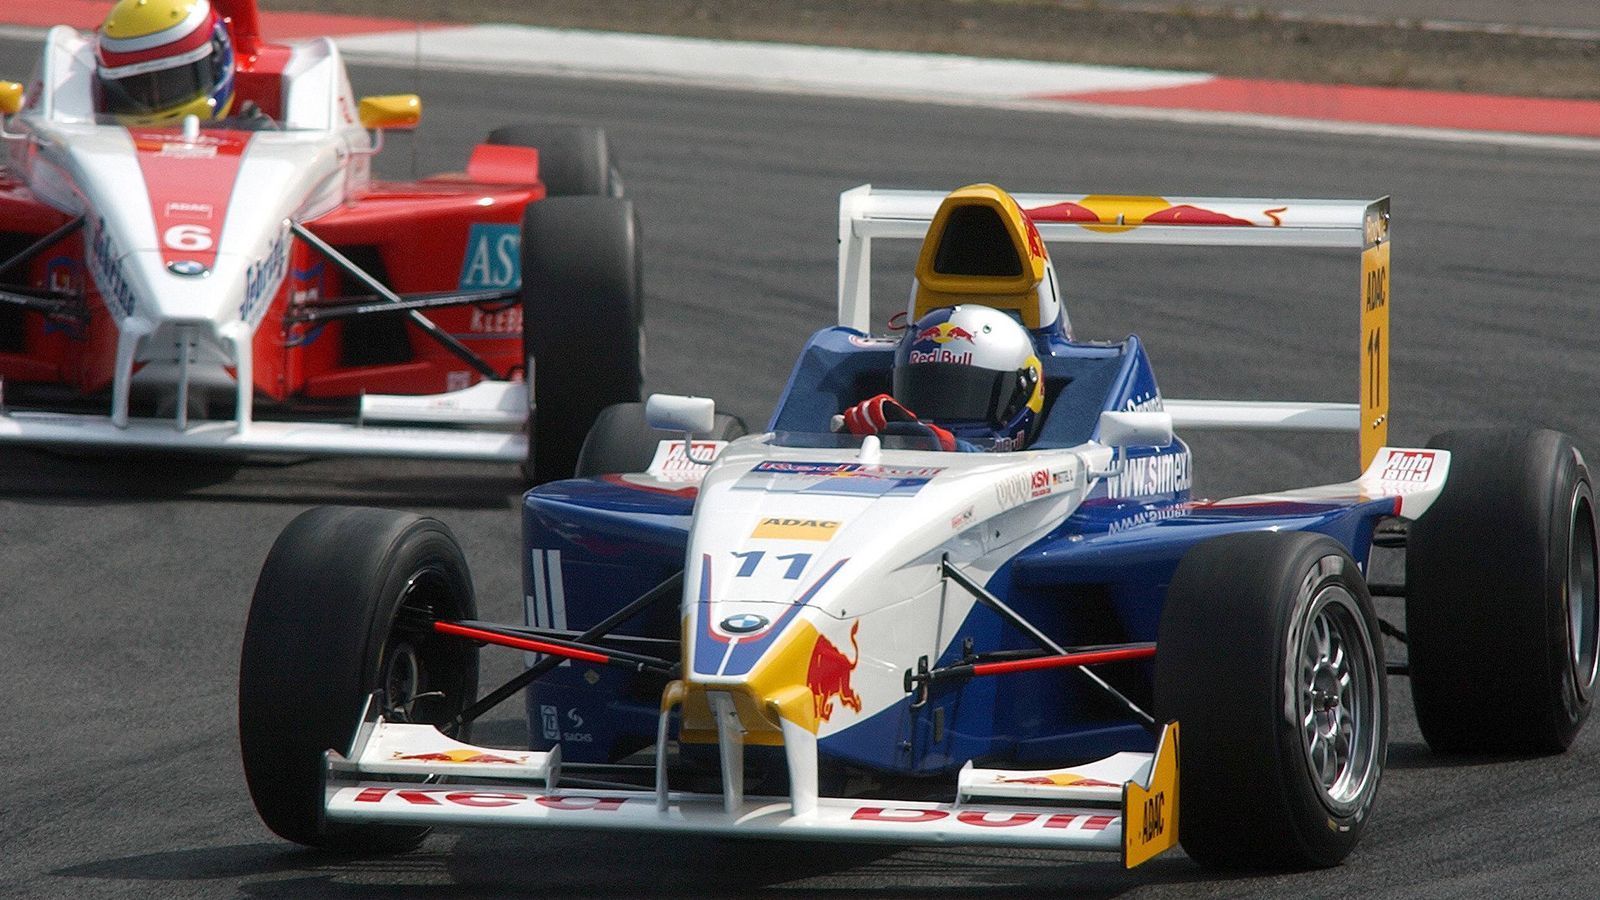 
                <strong>Eintritt in den Formelsport und schließlich in die Königsklasse</strong><br>
                Tatsächlich ging es relativ schnell: 2003 erfolgte sein Wechsel in den Formelsport in die Formel BMW, die er ein Jahr später gewann. 2005 ging er in die Formel-3-Euroserie, wo er 2006 Vizemeister wurde. Parallel stieß er als Formel-1-Testfahrer für BMW-Sauber die Tür zur Königsklasse auf. Und auch hier verlor Vettel keine Zeit.
              